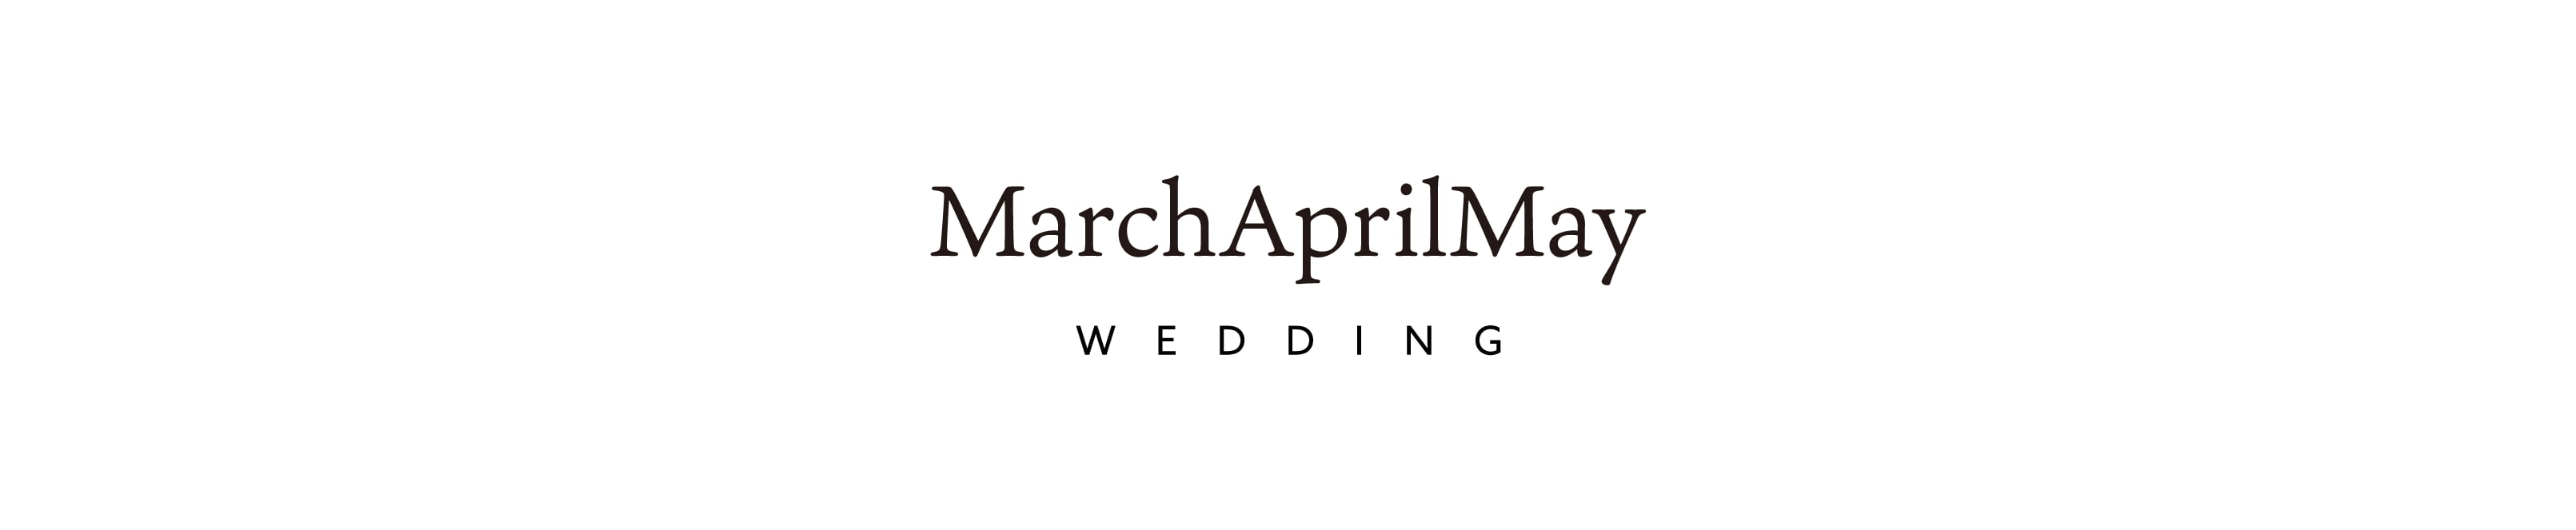 MarchAprilMay  WEDDING